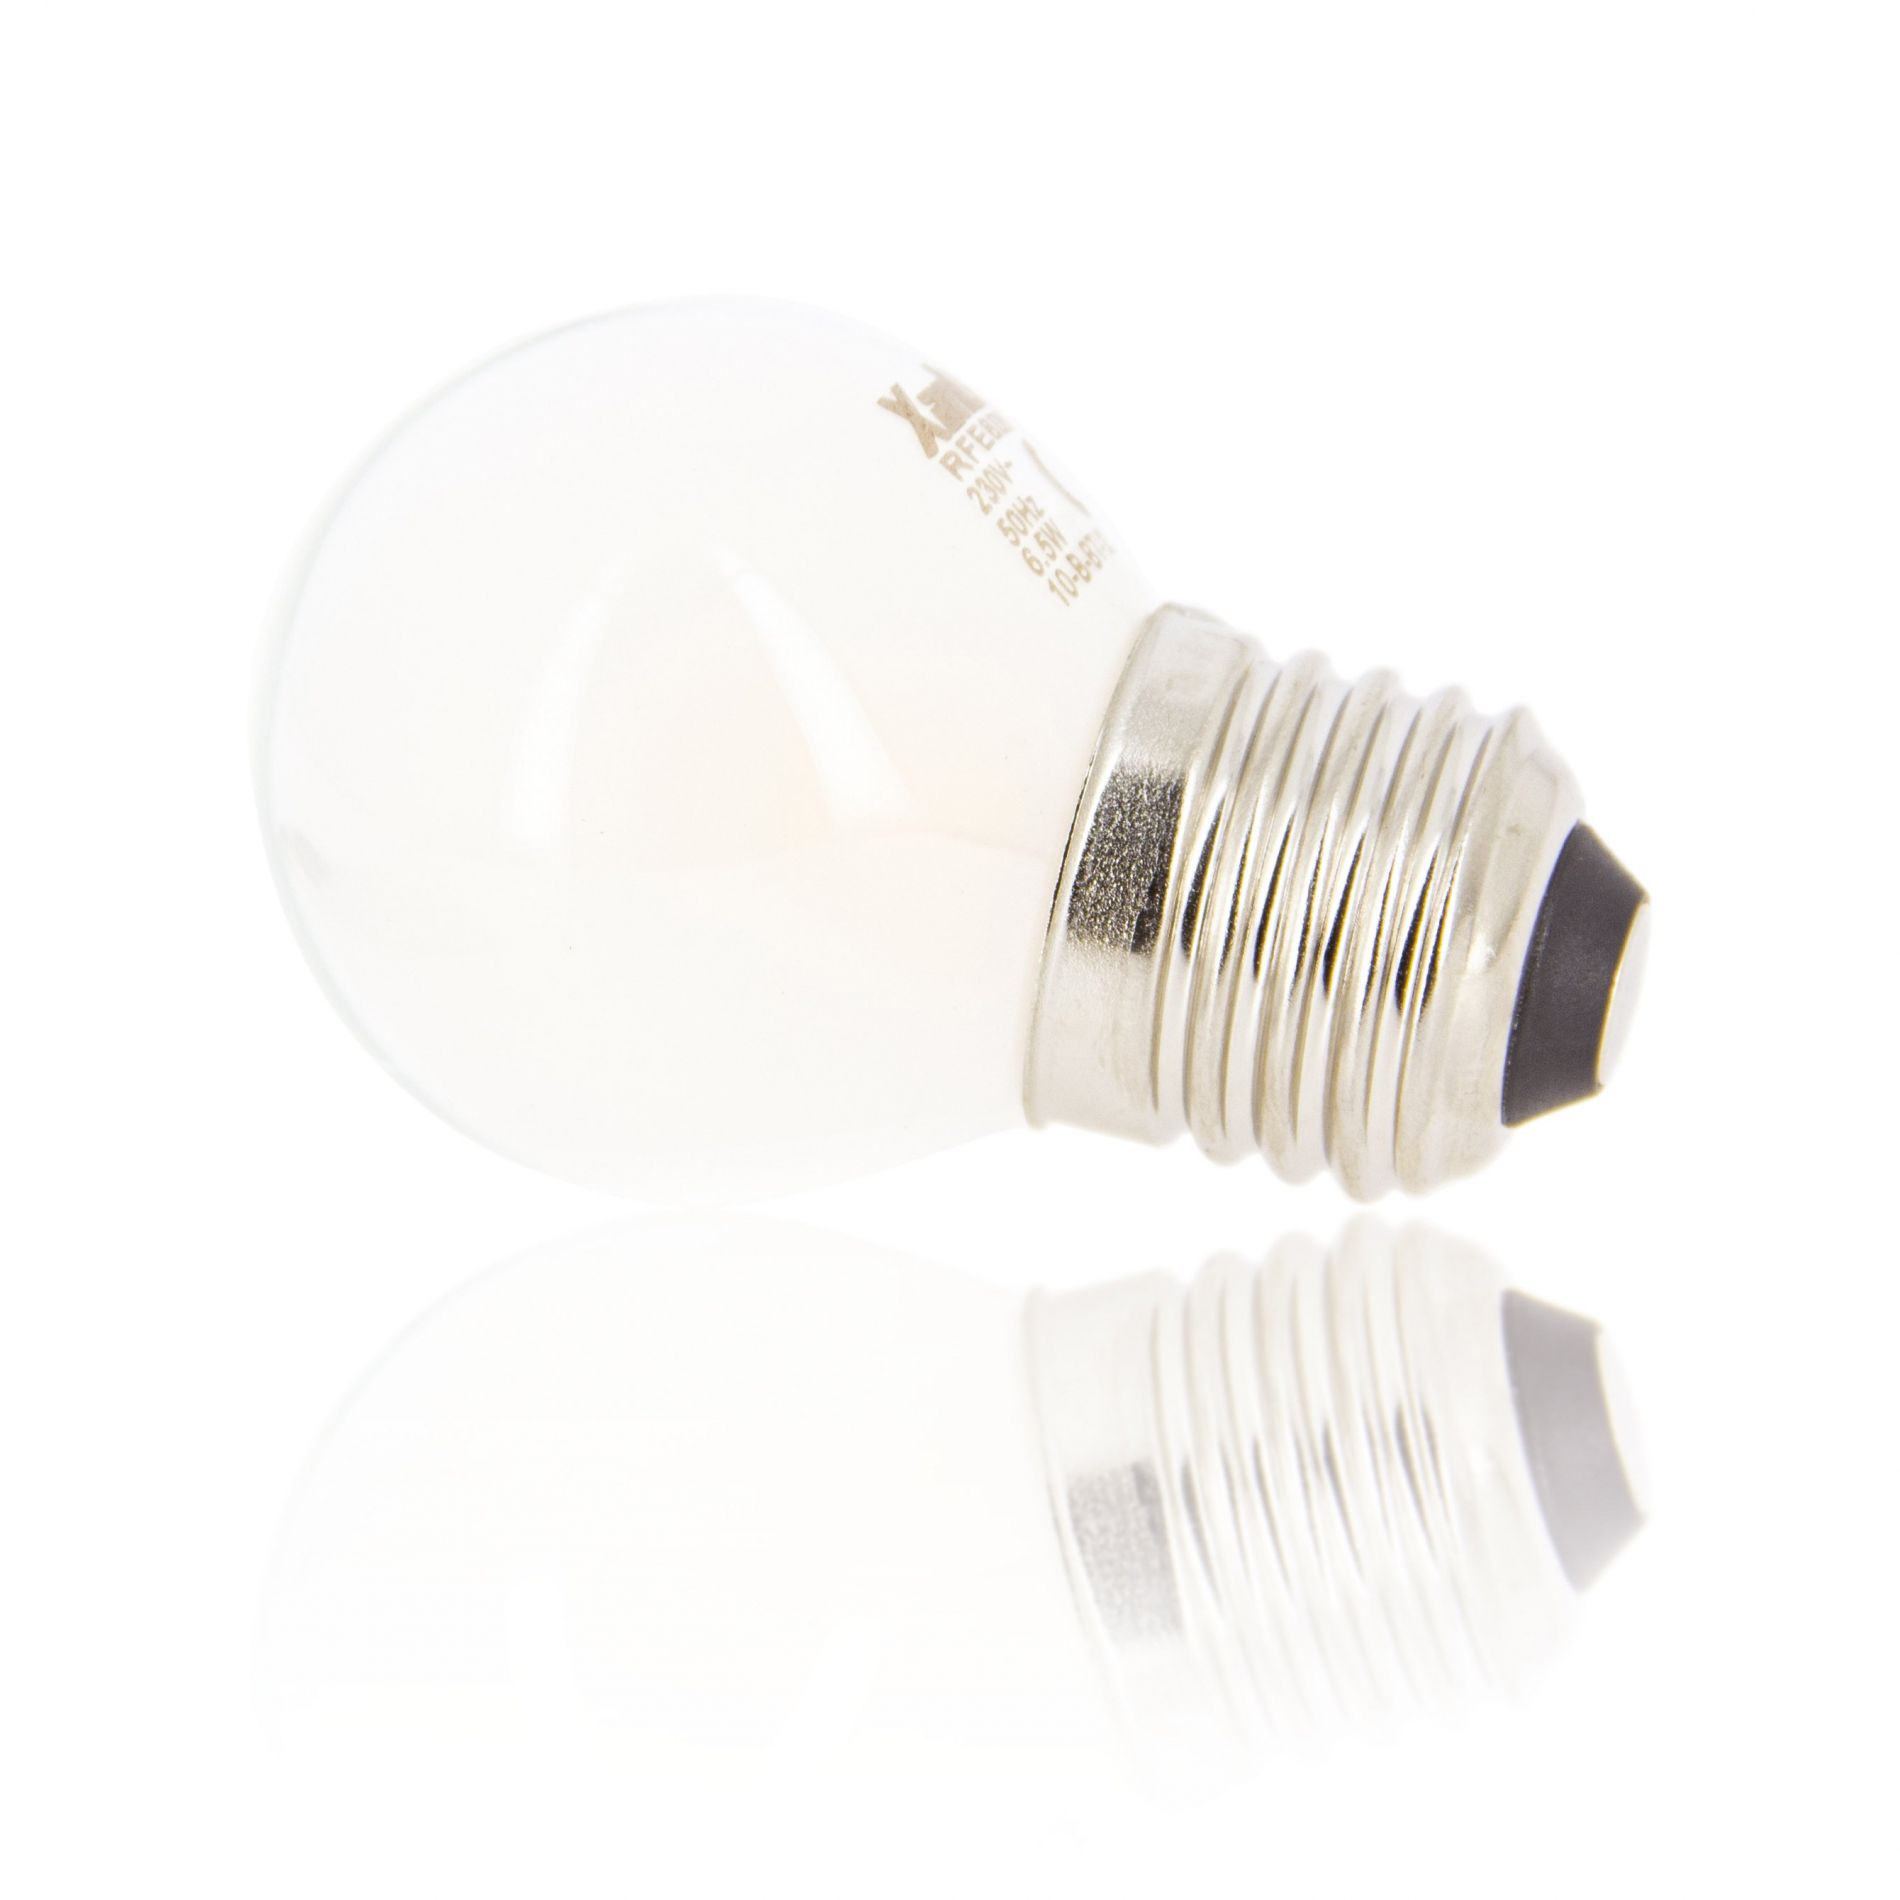 Ampoule LED dimmable E14 OPALE éclairage blanc chaud 6.5W 806 lumens Ø4.5cm  - Keria et Laurie Lumière